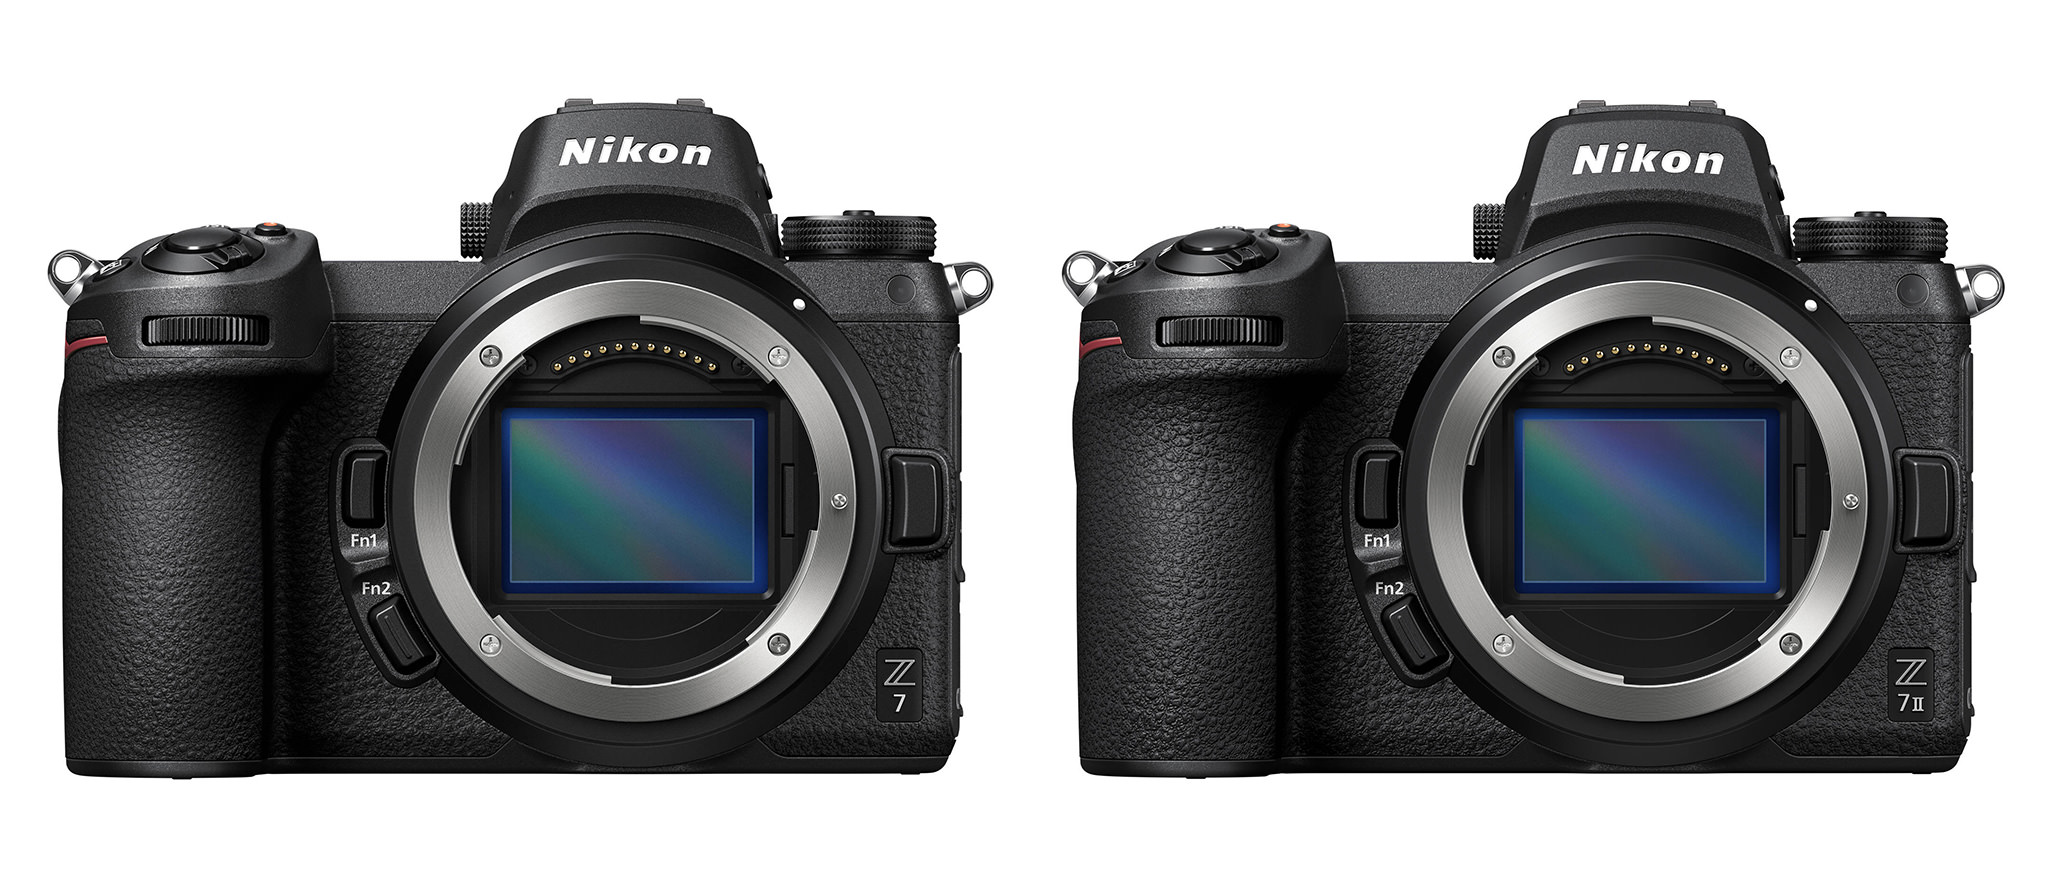 Nikon Z7 vs Z7 II: Which One Should You Buy?